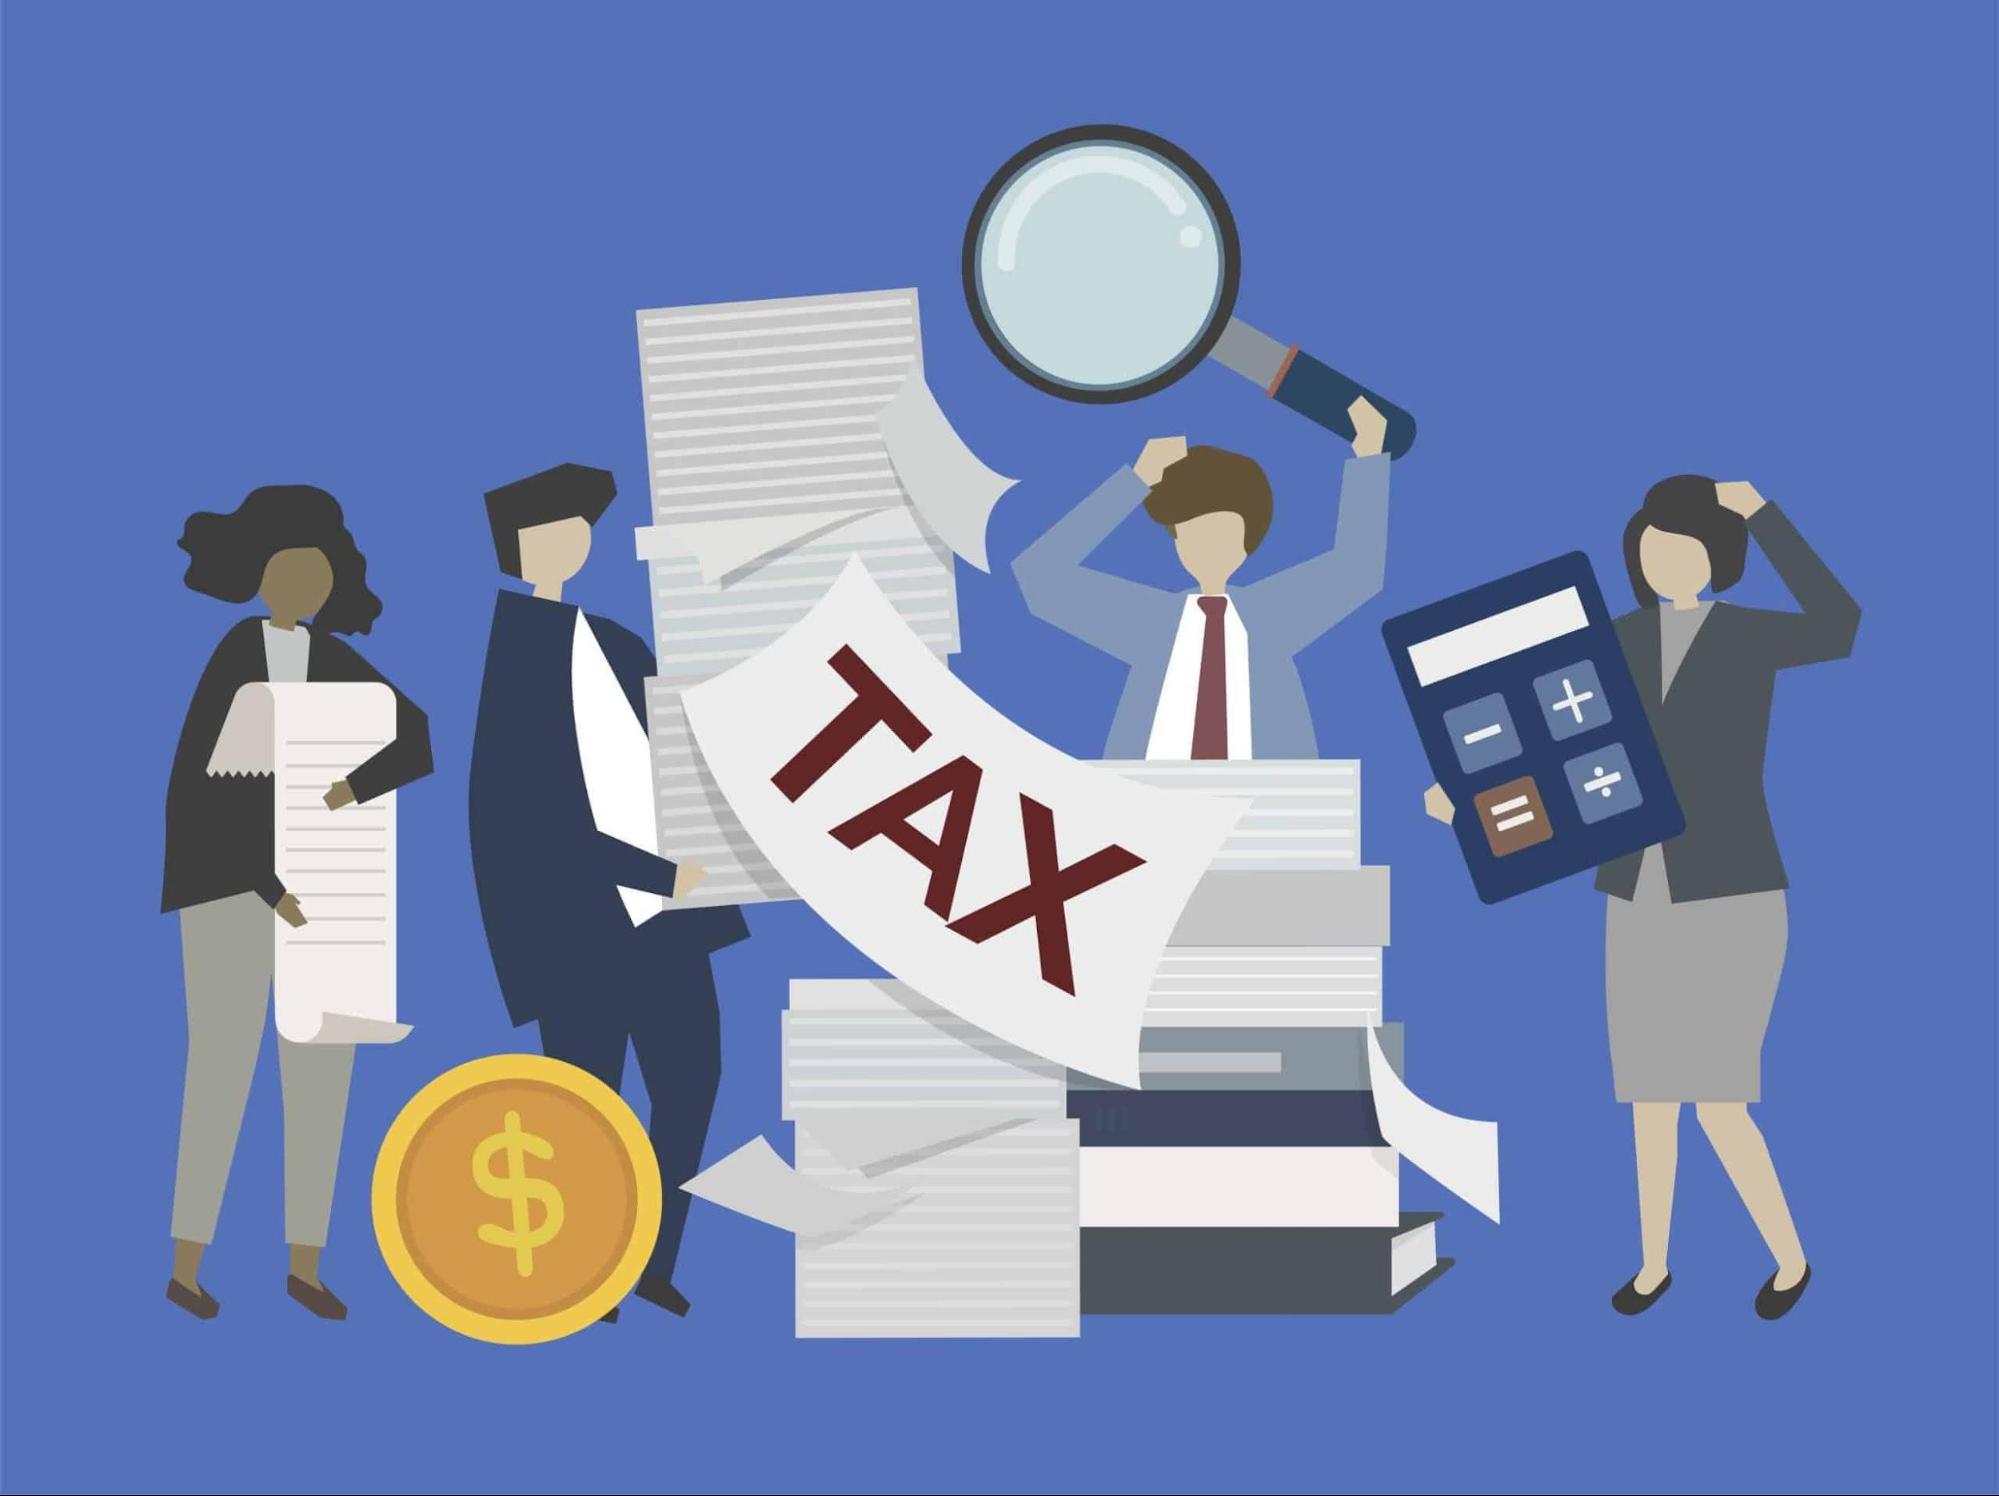 Mã số thuế là số định danh duy nhất được cấp cho doanh nghiệp, tổ chức kinh tế